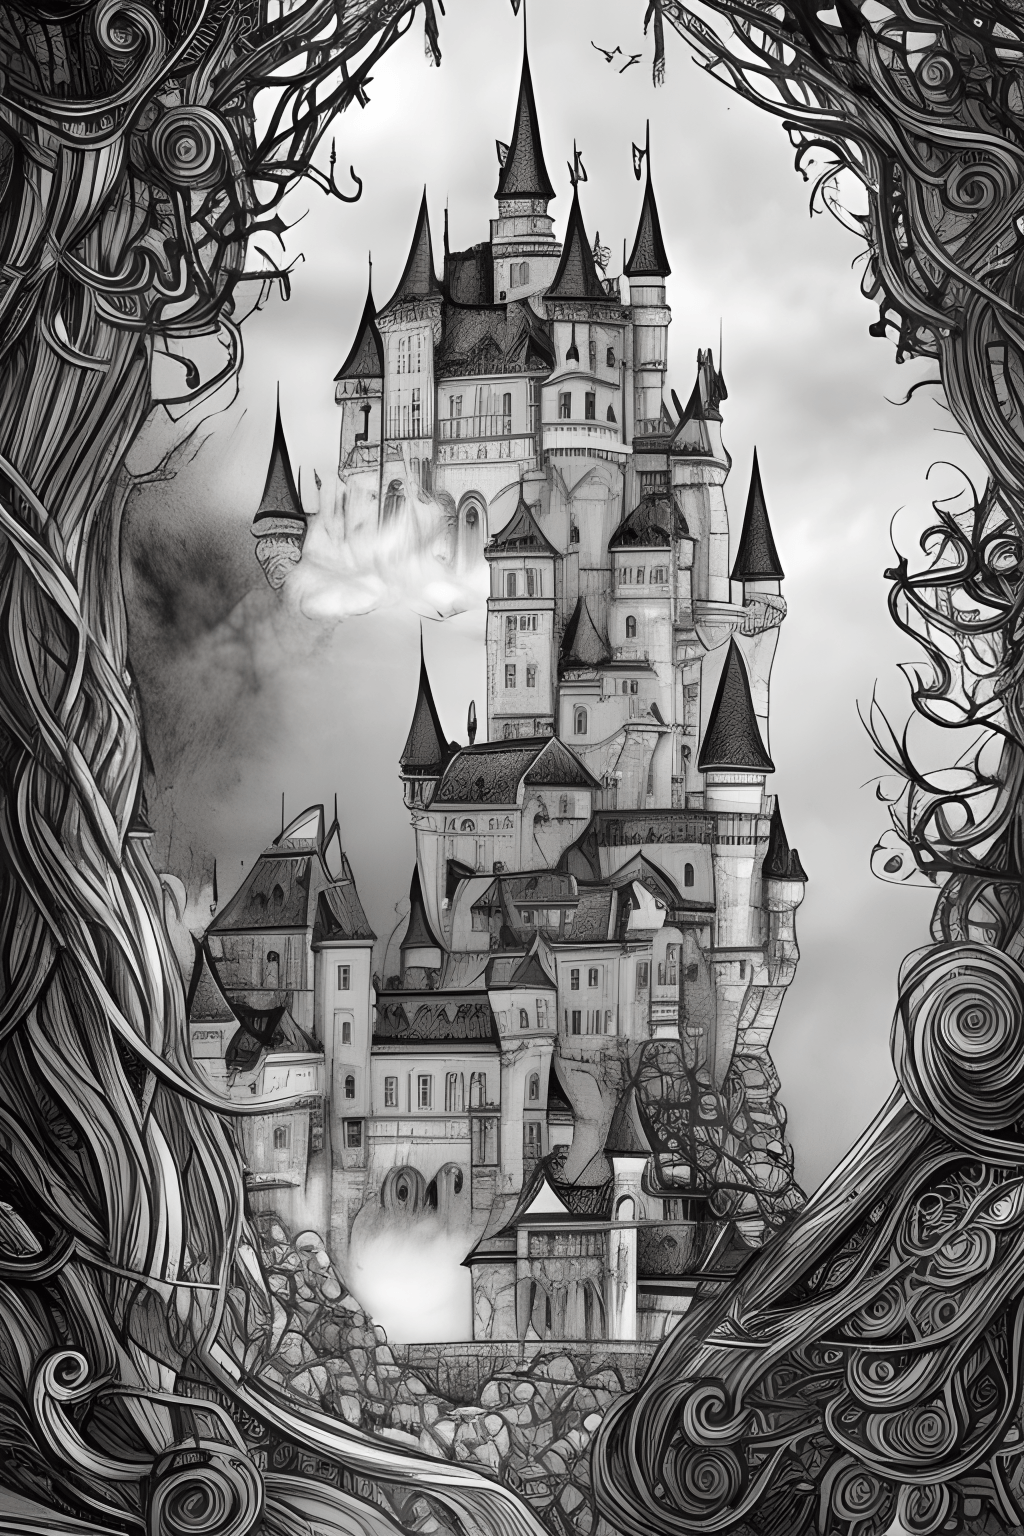 Dessin de conte de fées fantaisiste en noir et blanc à doublure épaisse  ultra détaillé représentant un diorama du château · Creative Fabrica